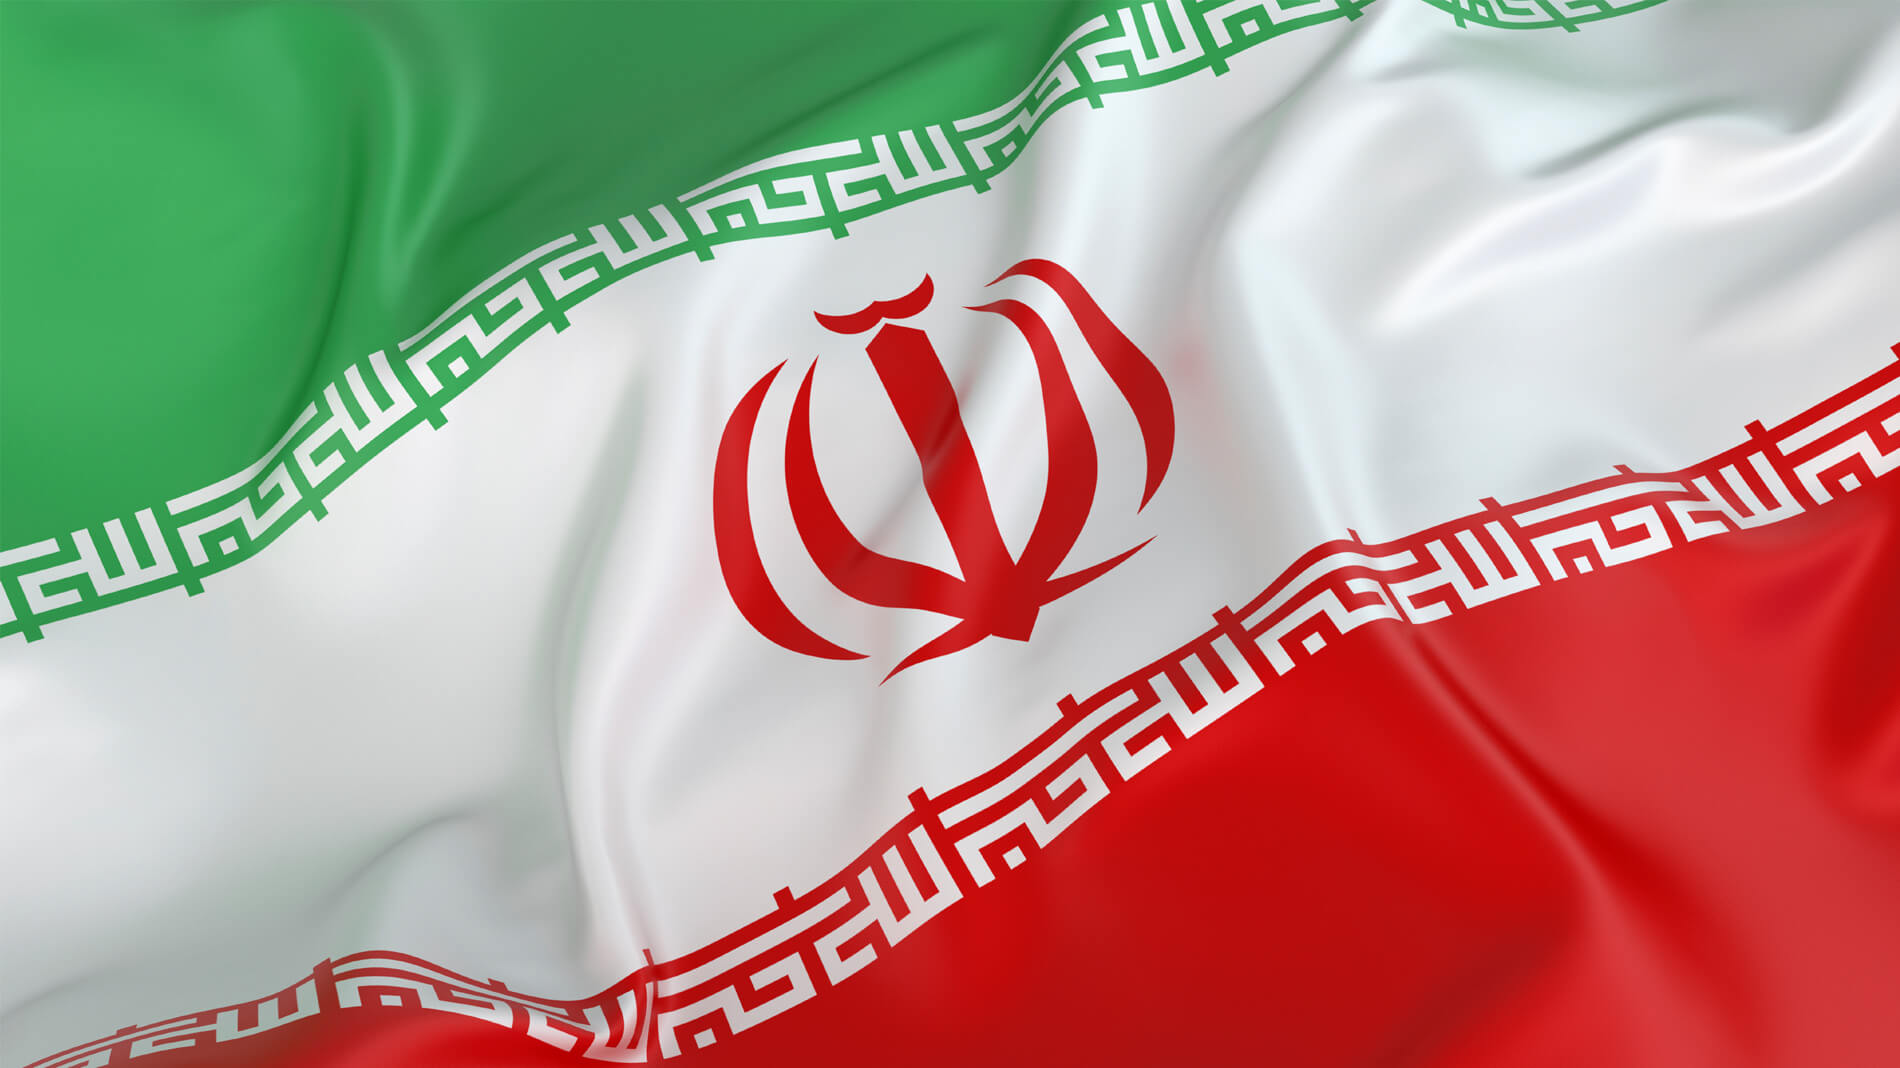 عکسی زیبا از پرچم ایران